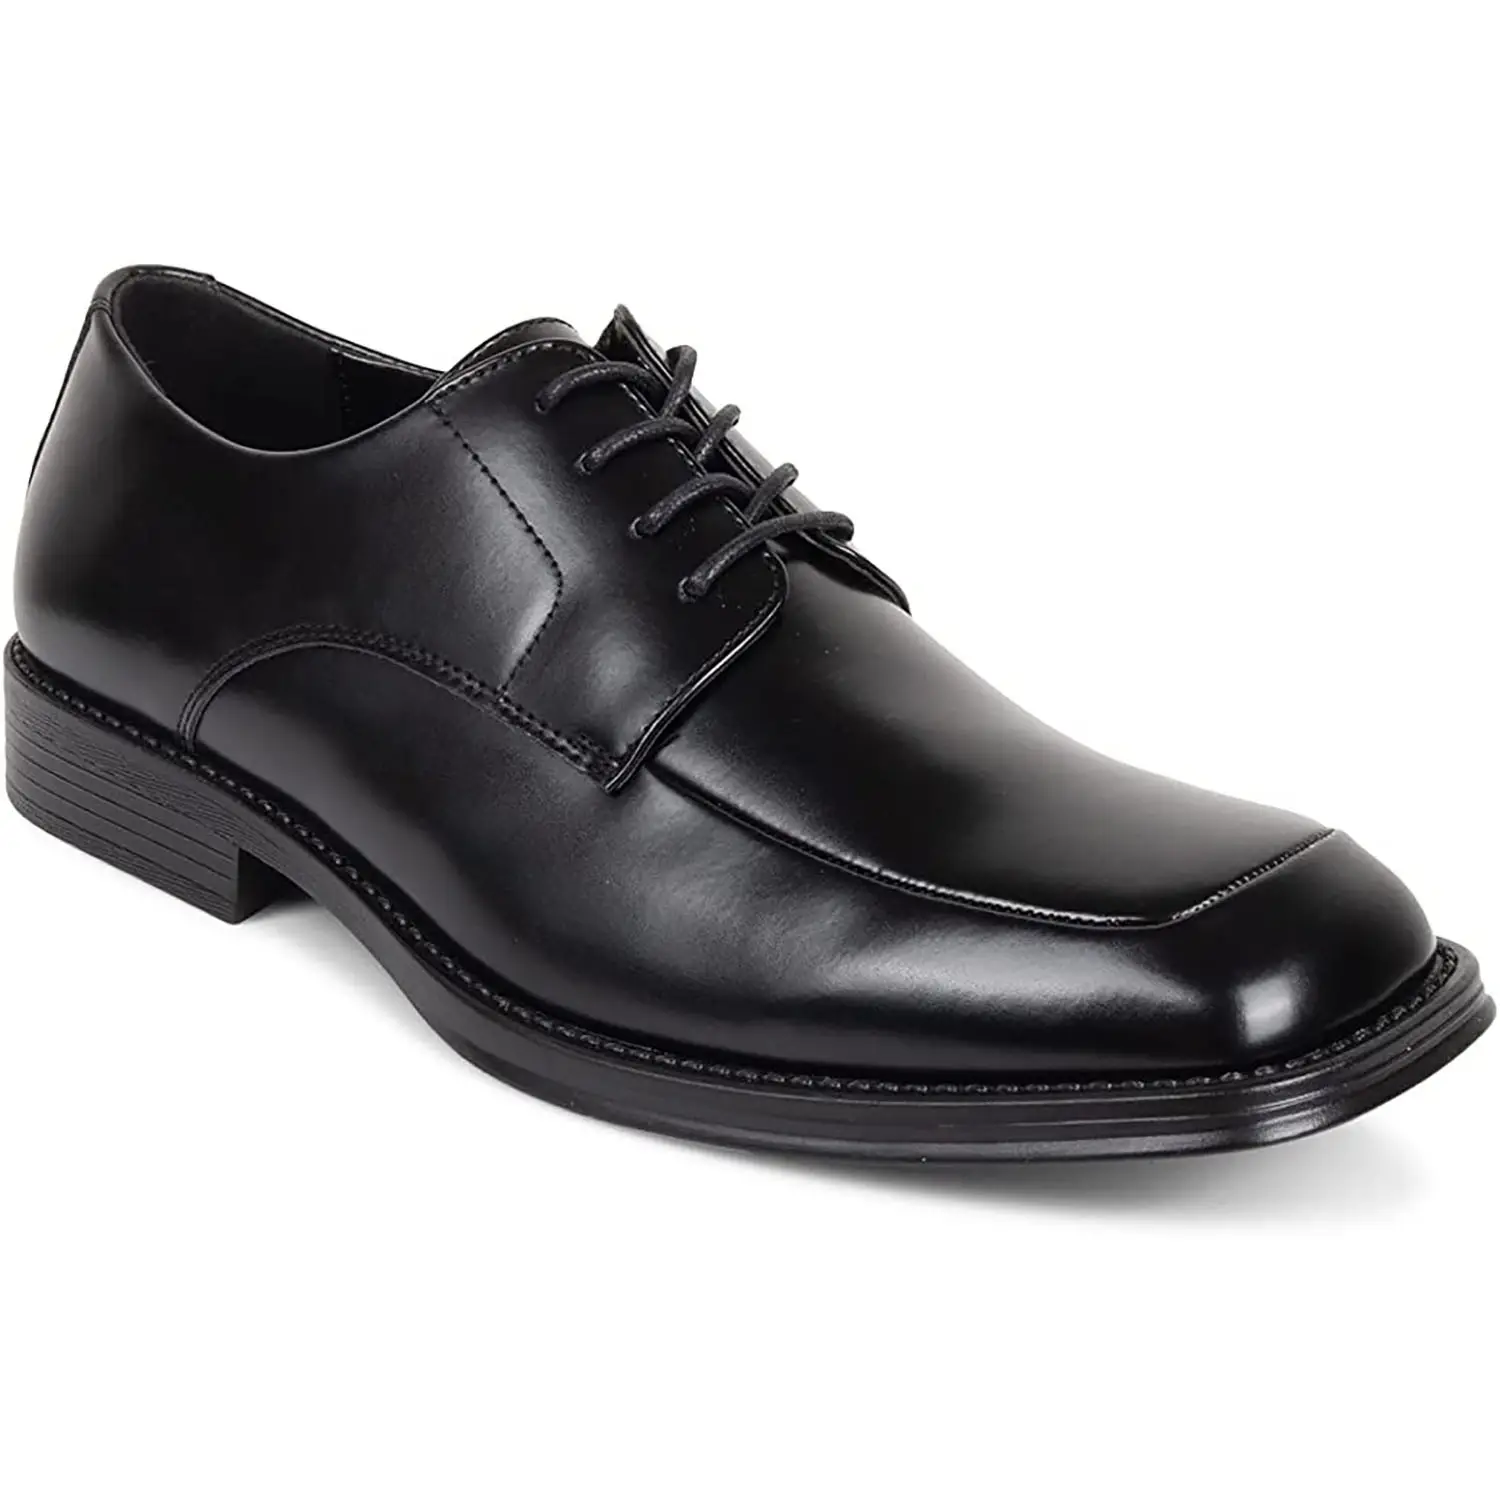 Custom Black Office Formal Dress Derby Shoes For Men Genuine Leather